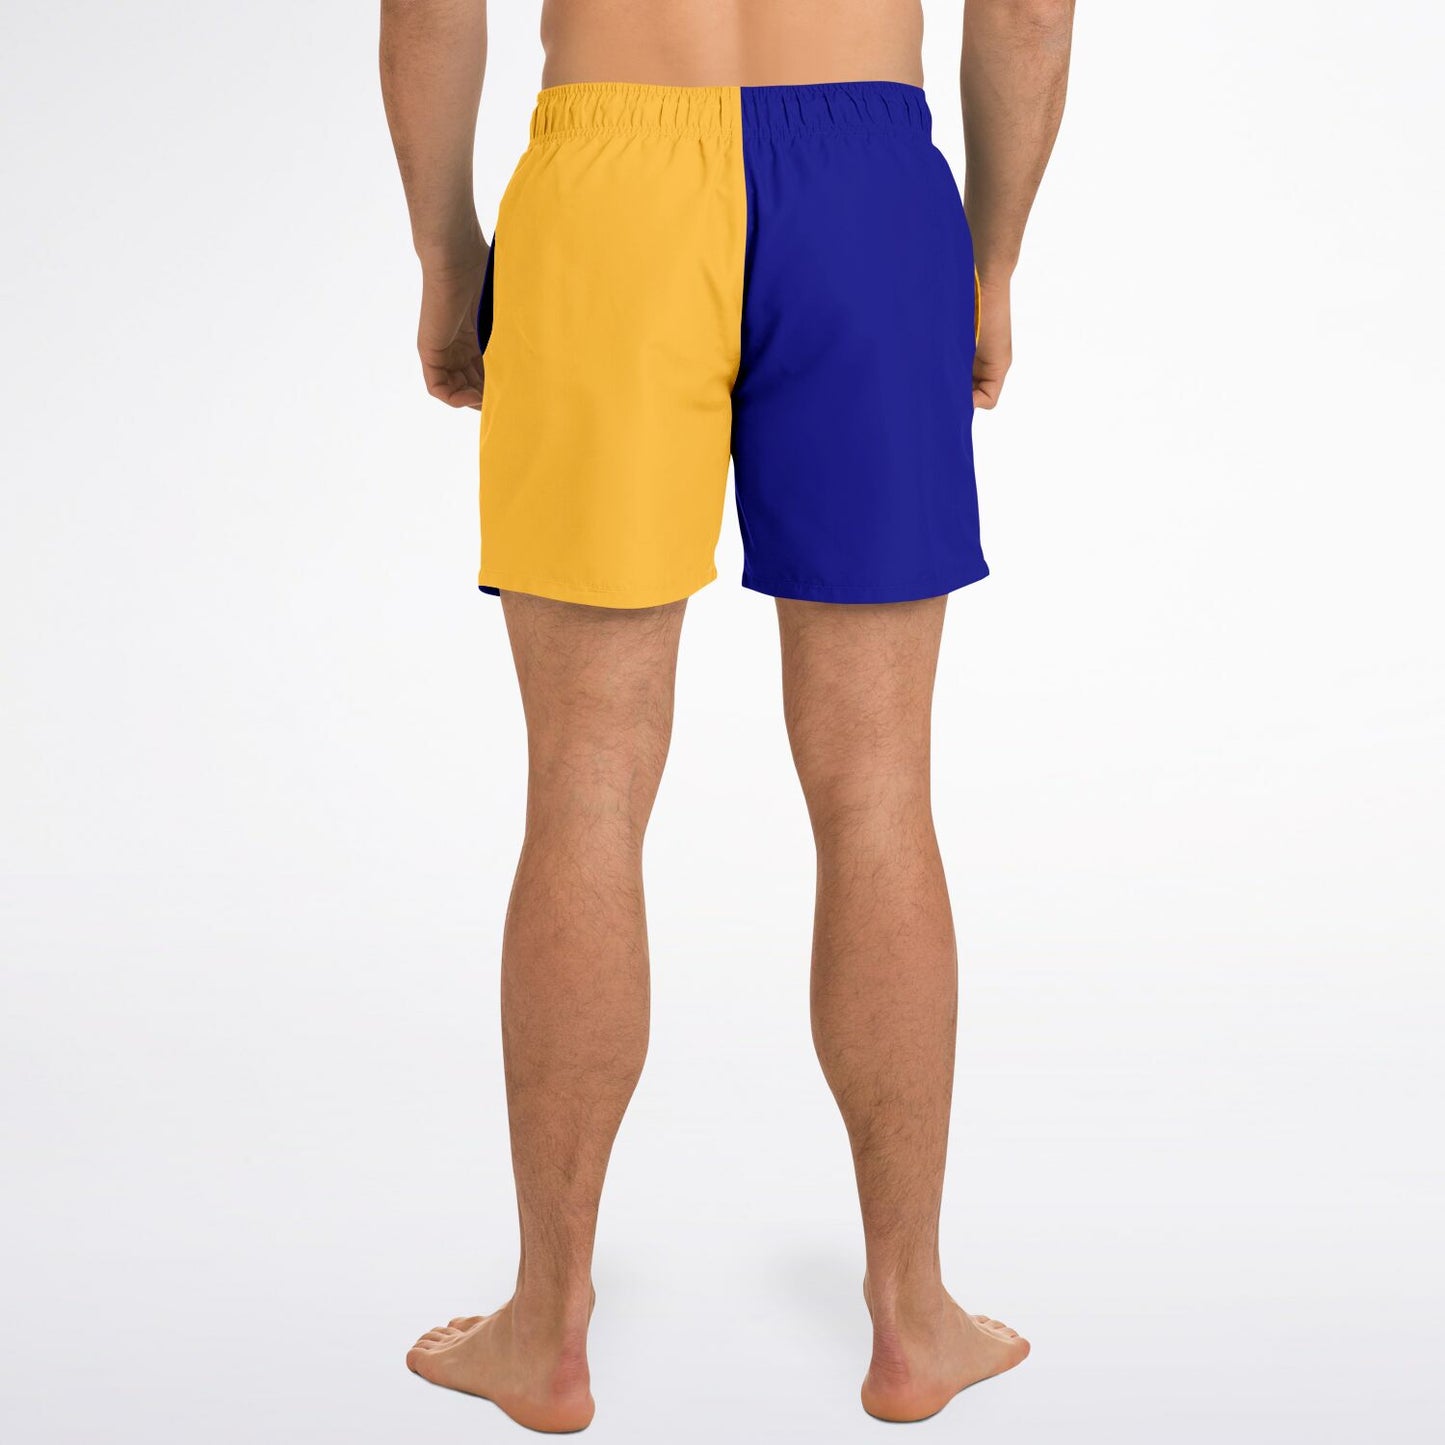 Signals Nautical Inspired Men's Swim Shorts - KILO